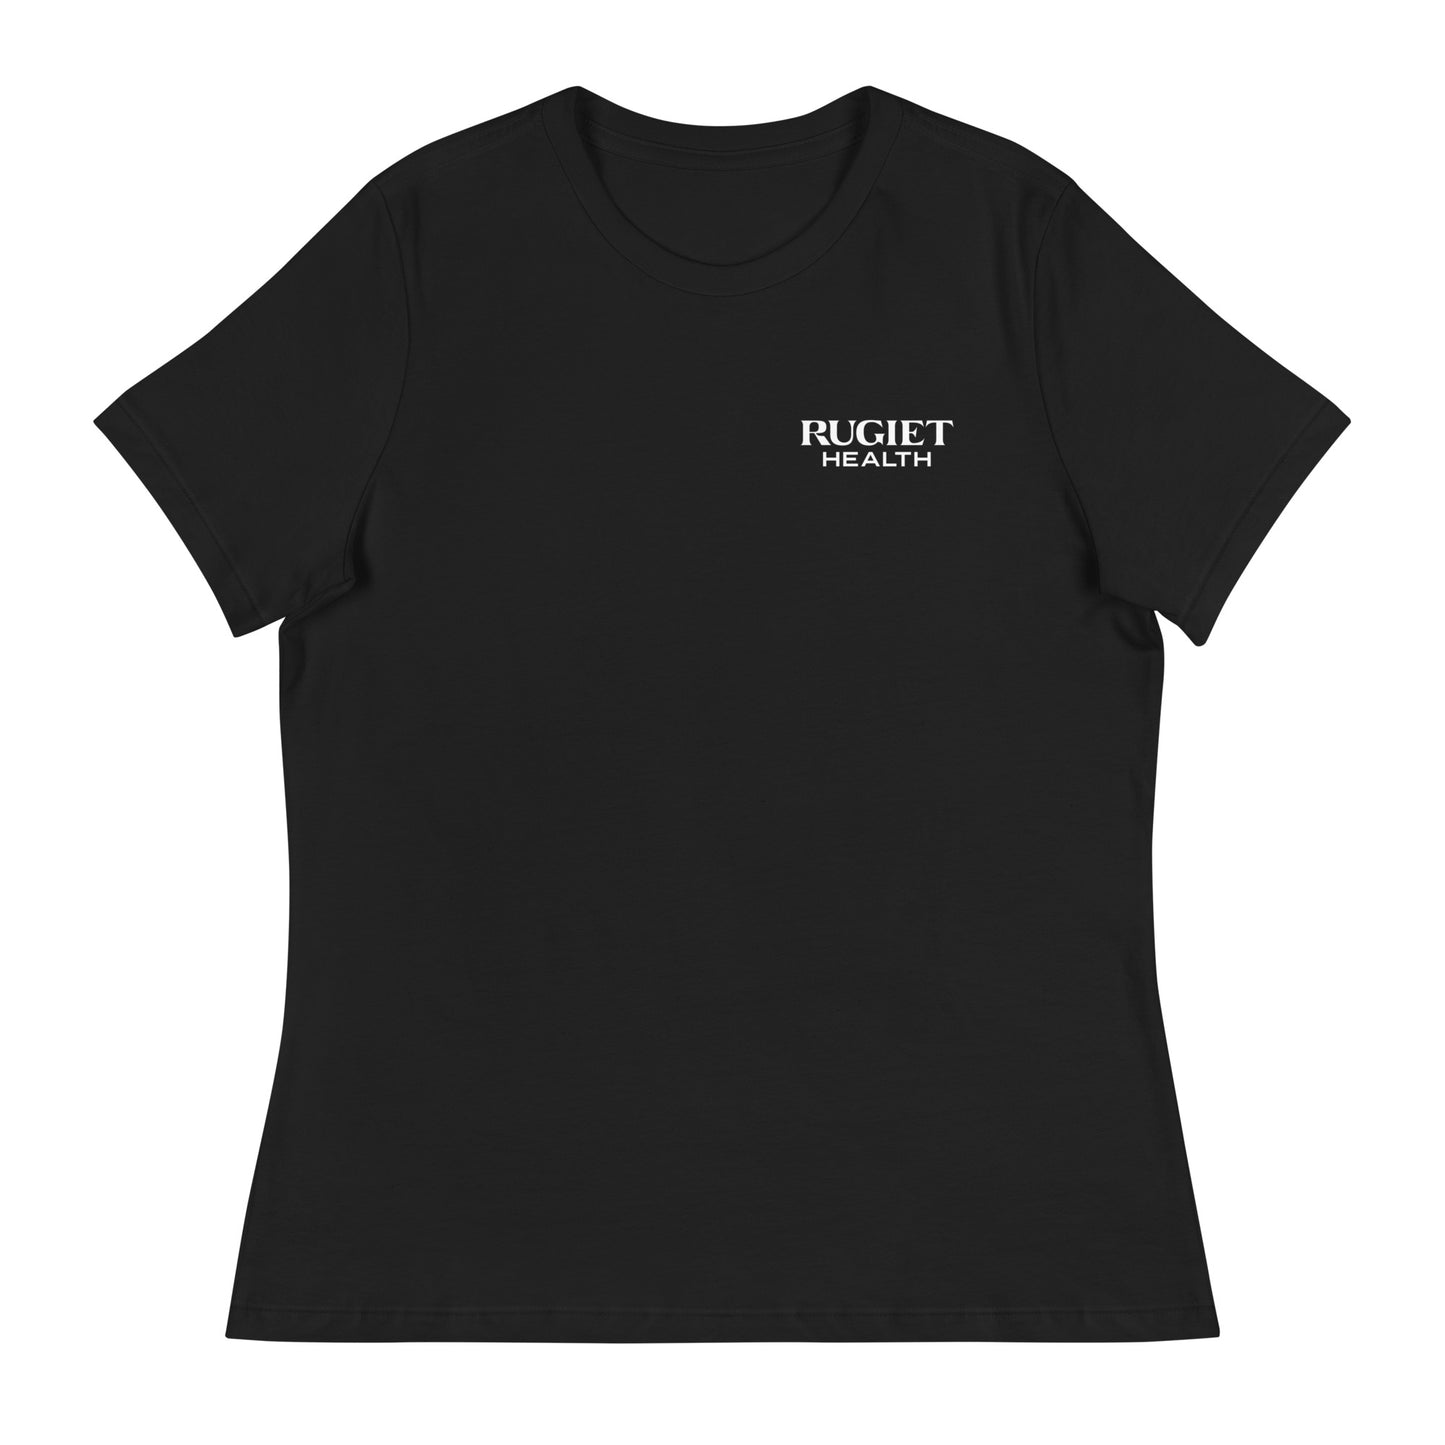 Women's Classic T-shirt - Rugiet Health